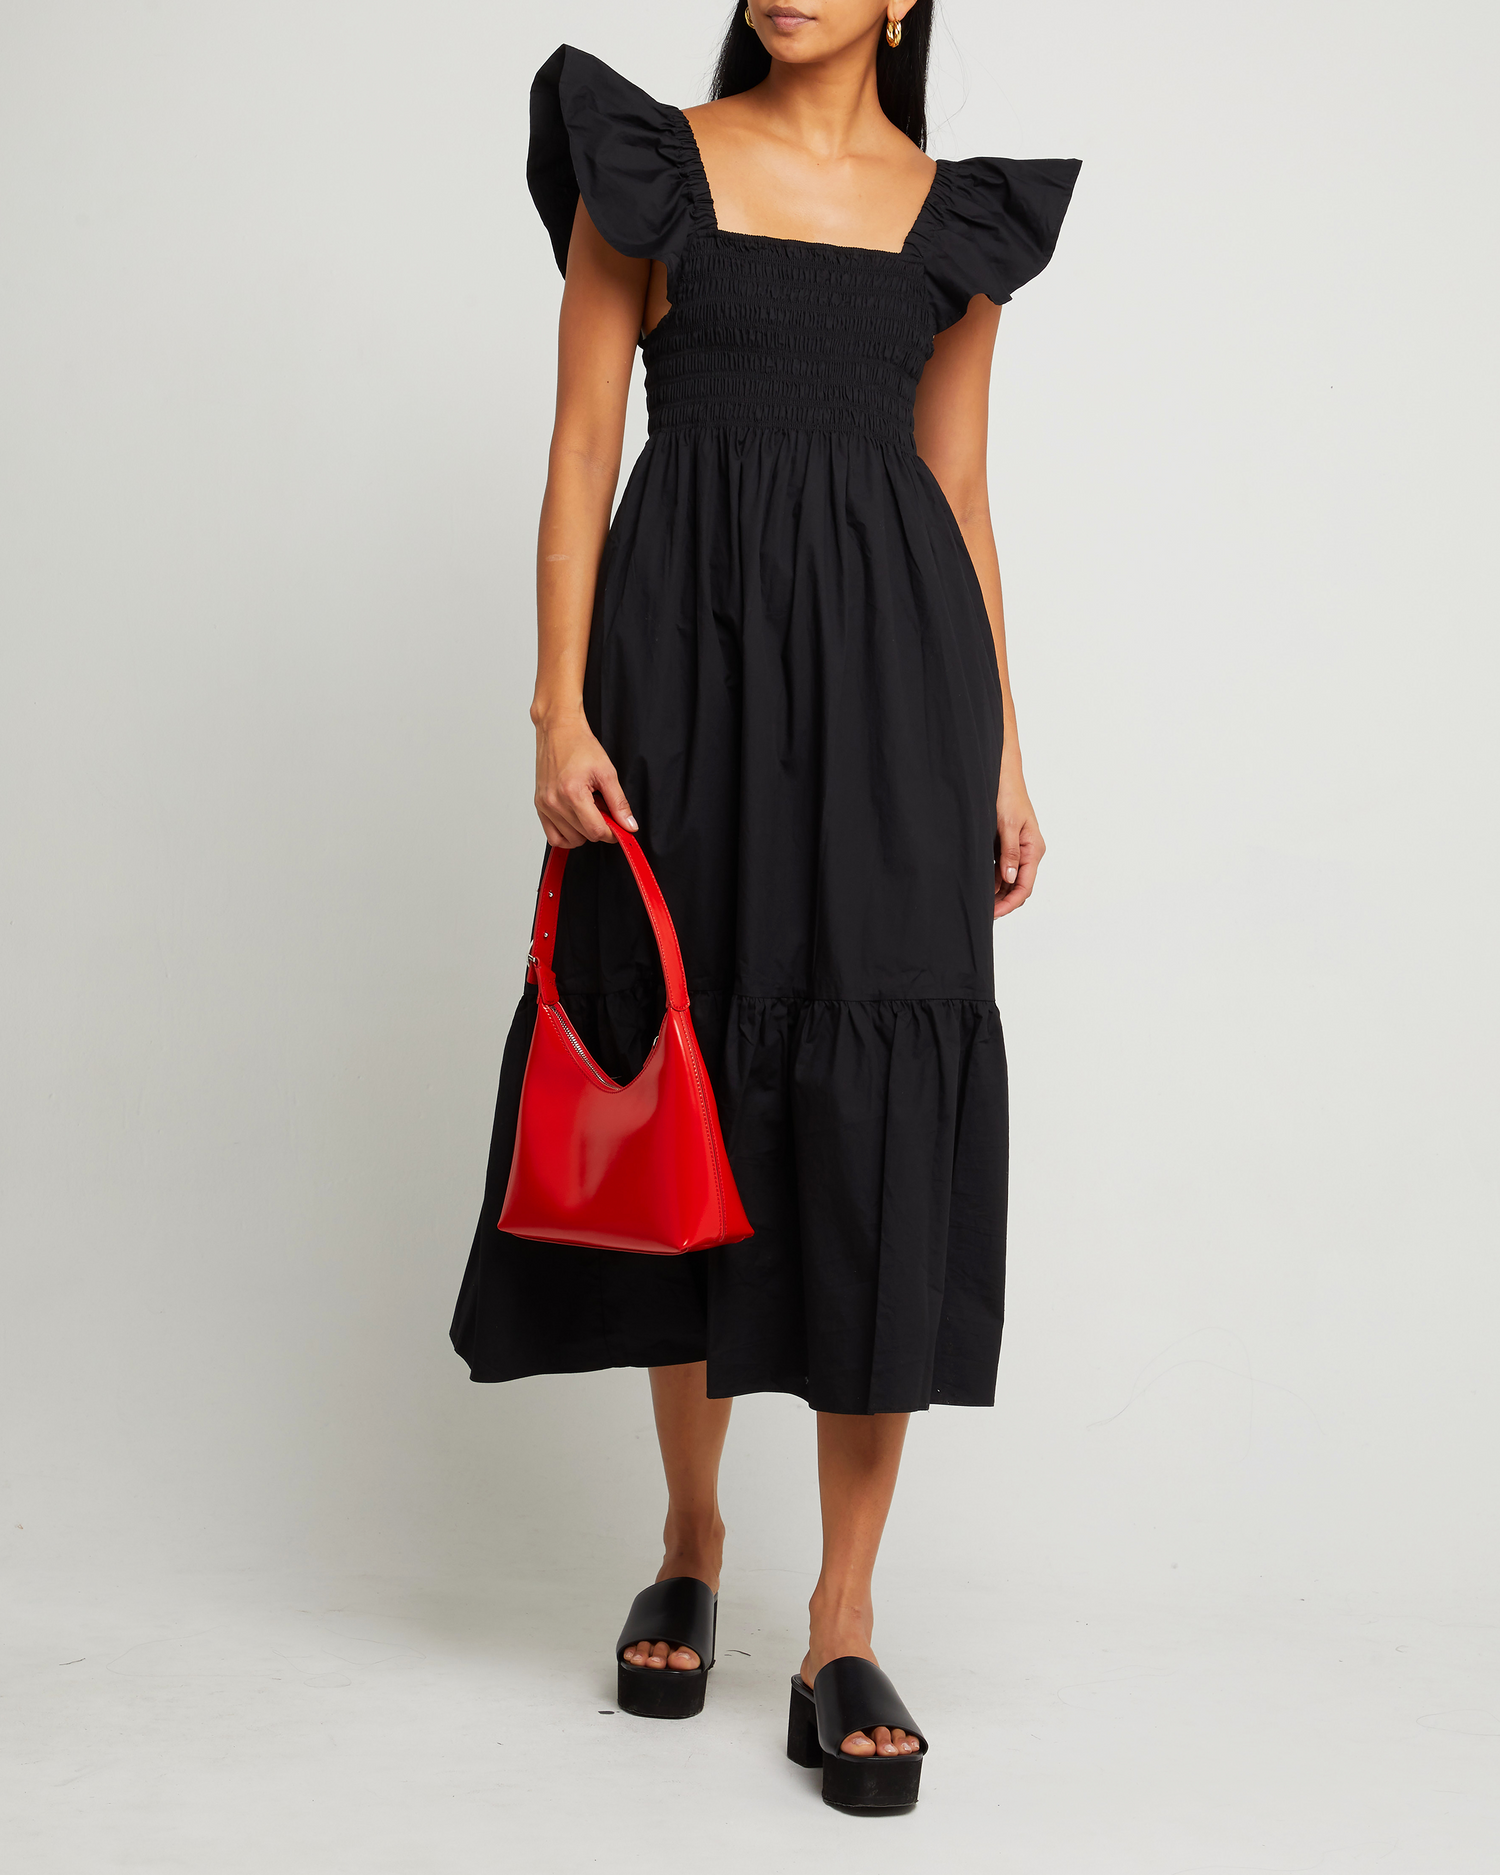 Fifth image of Tuscany Dress, a black maxi dress, smocked bodice, ruffled cap sleeves, pockets